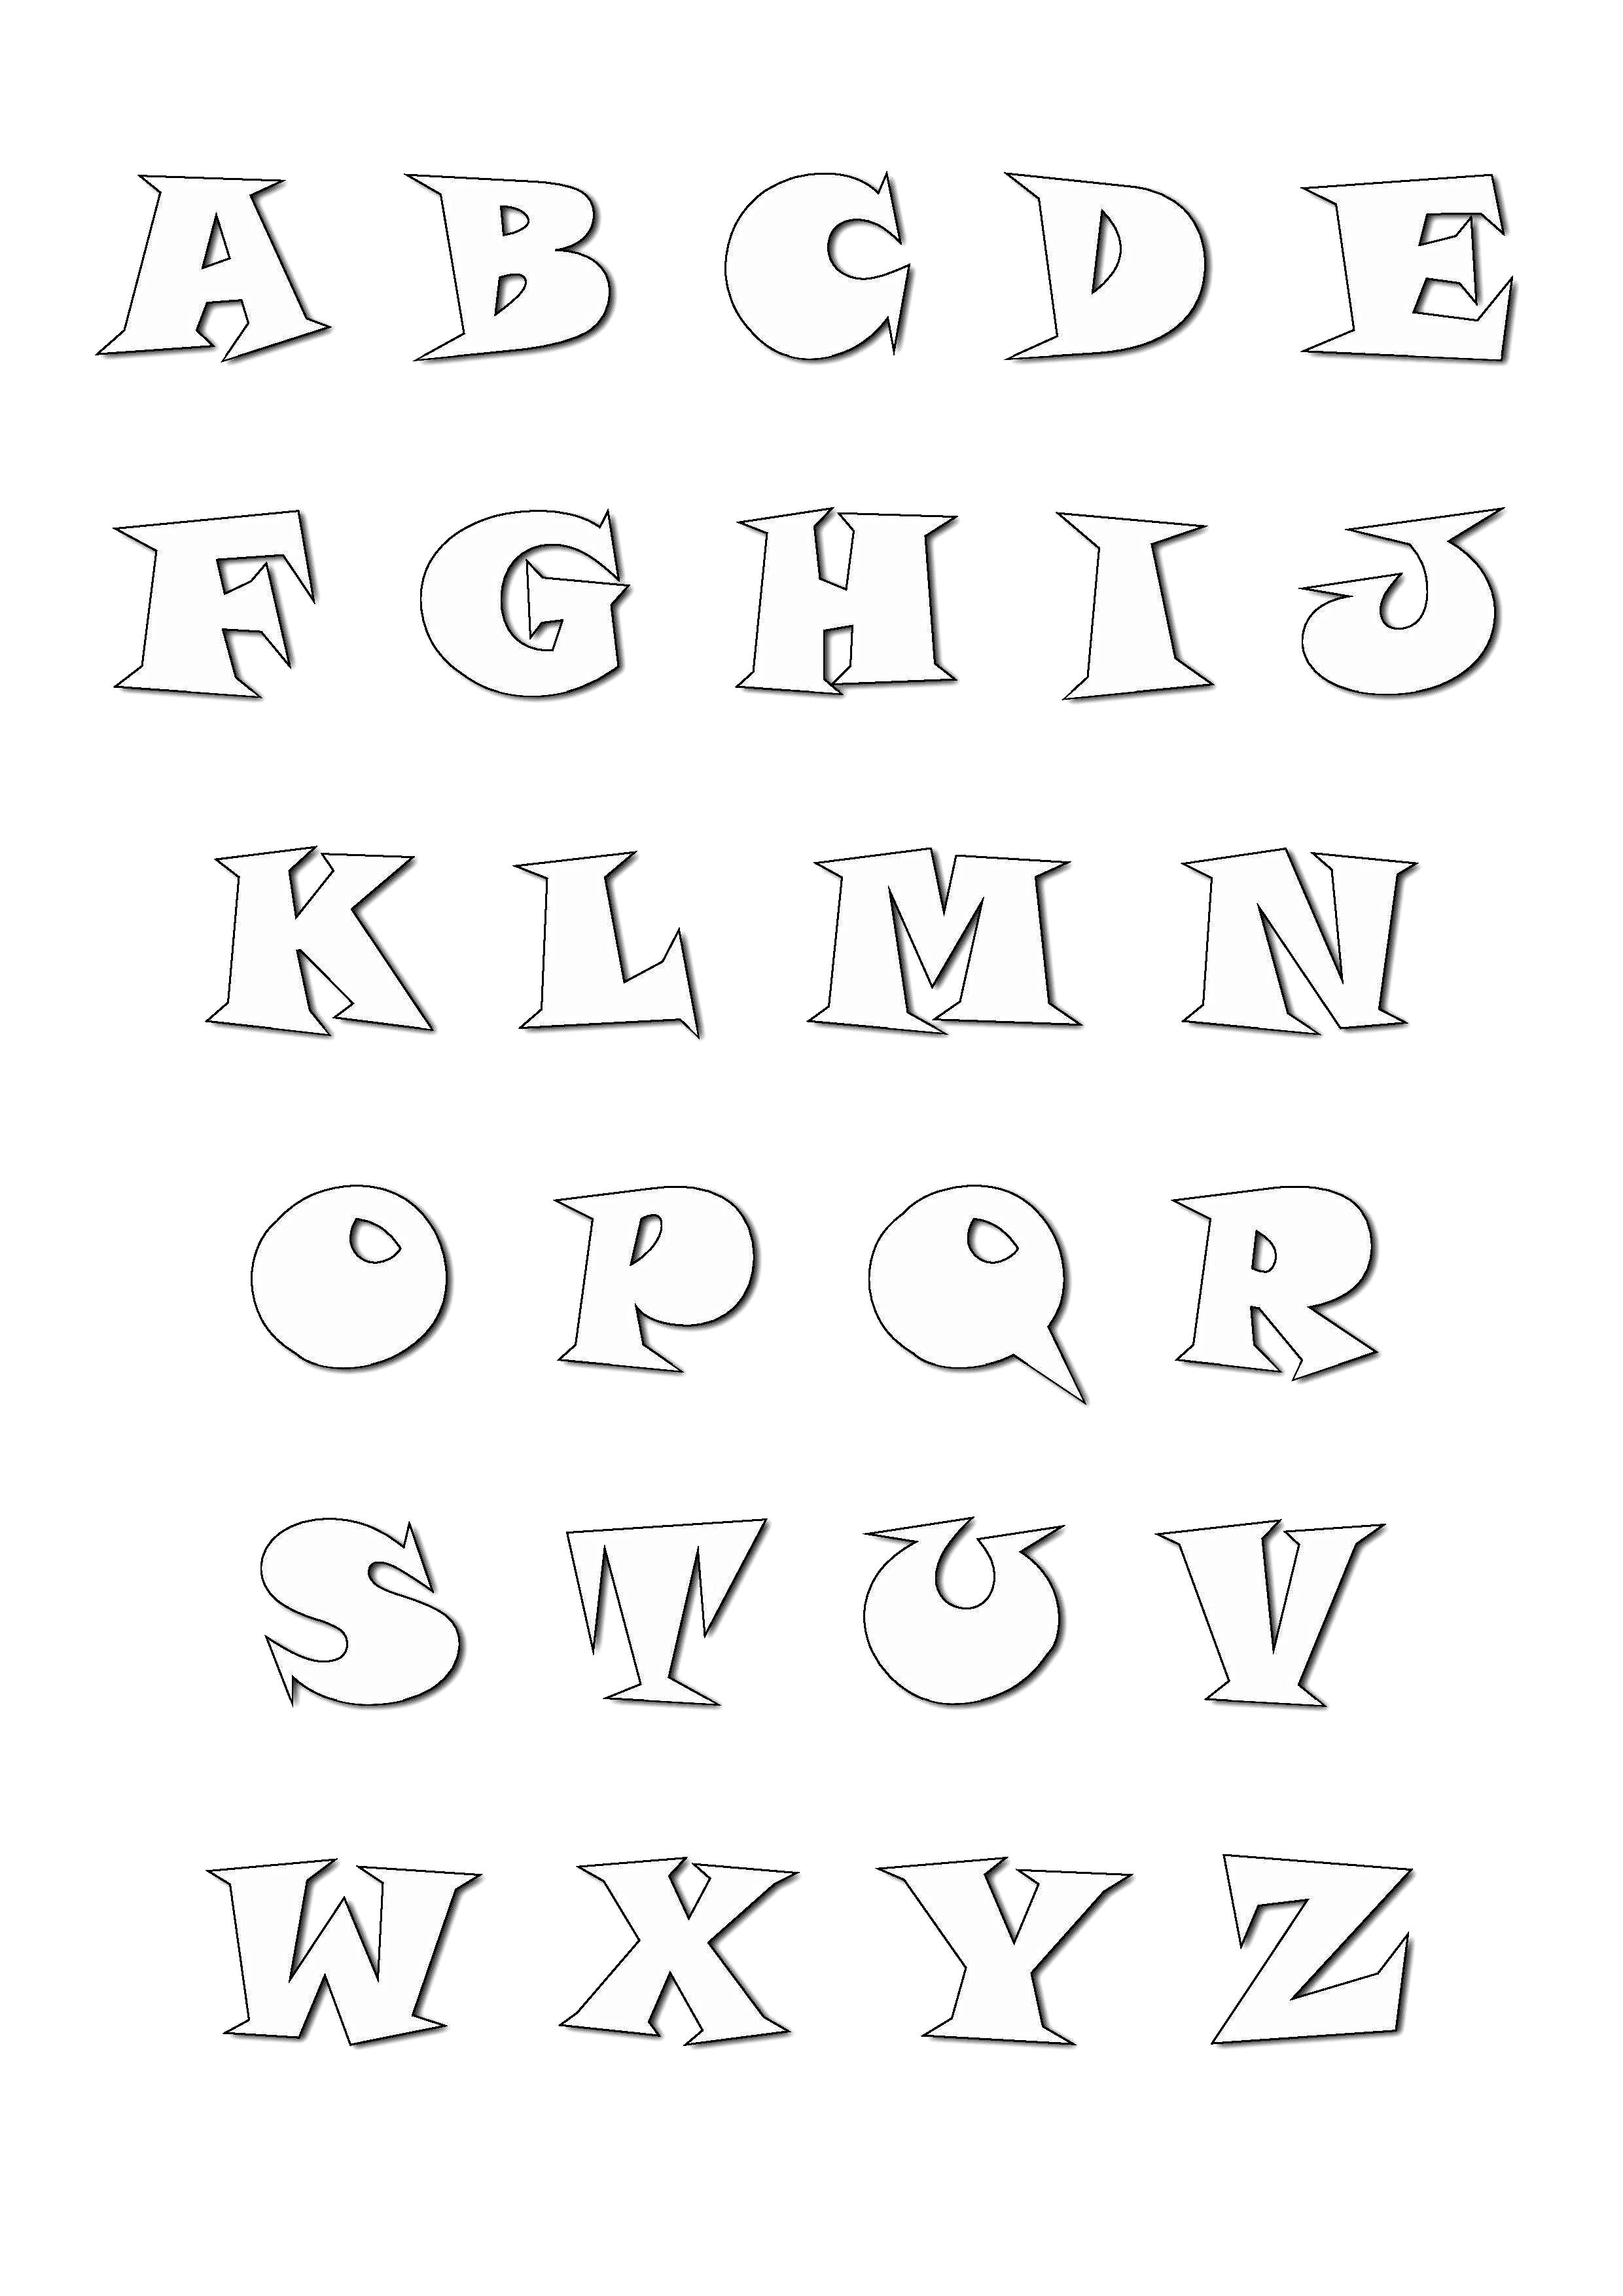 Increíble Dibujos para colorear de Alfabeto para imprimir y colorear